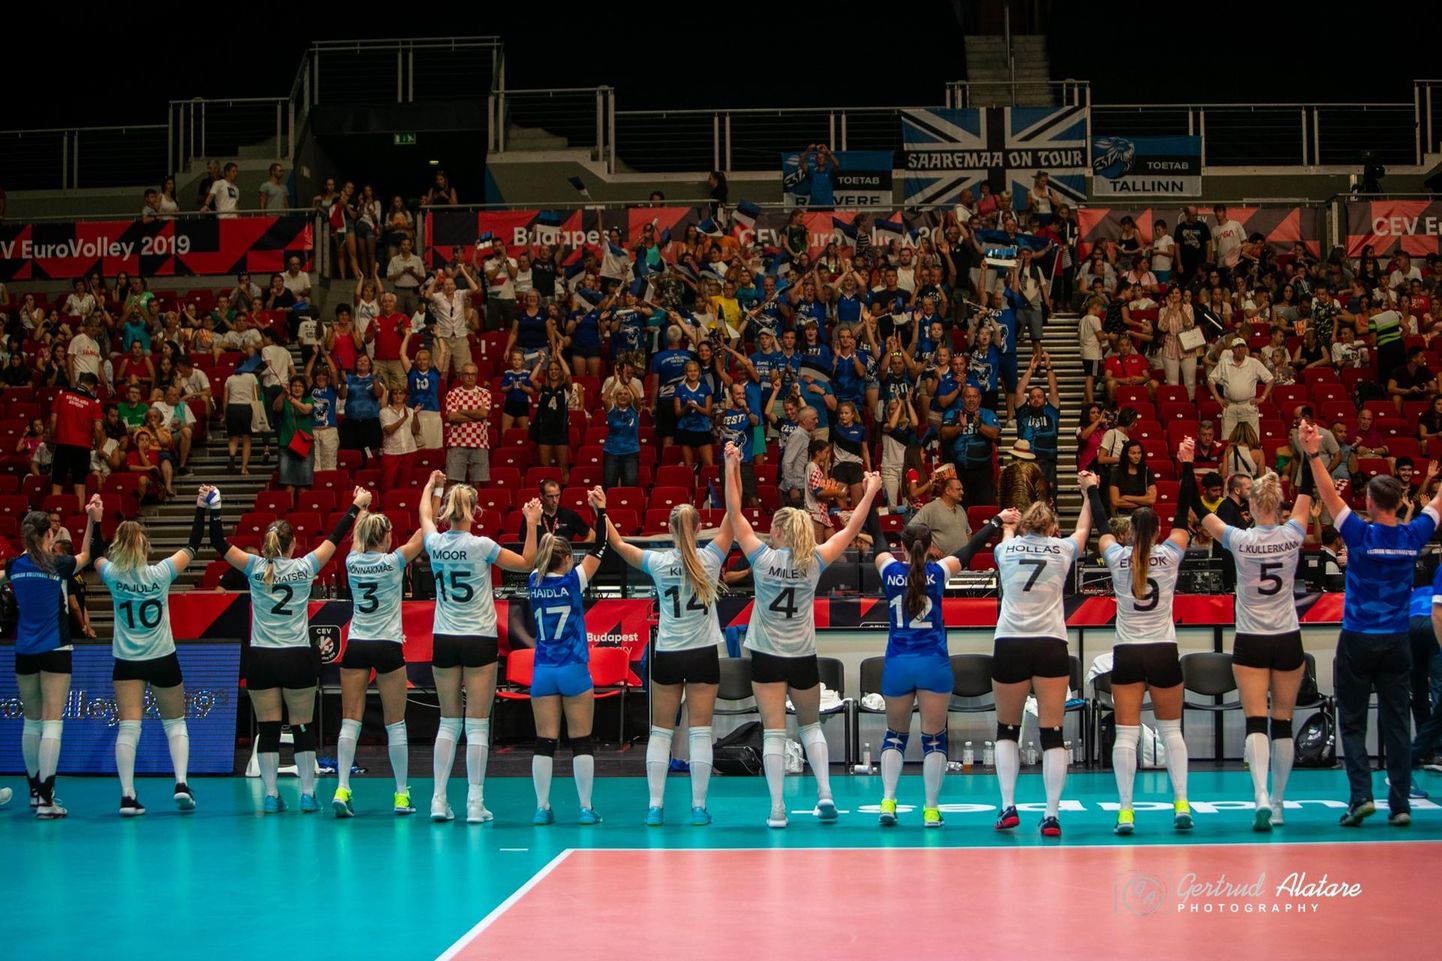 Eesti naiskonnal on põhjust fänne tänada - nemad olid omas vallas EM-turniiri parimad. FOTO: Gertrud Alatare/Volley.ee